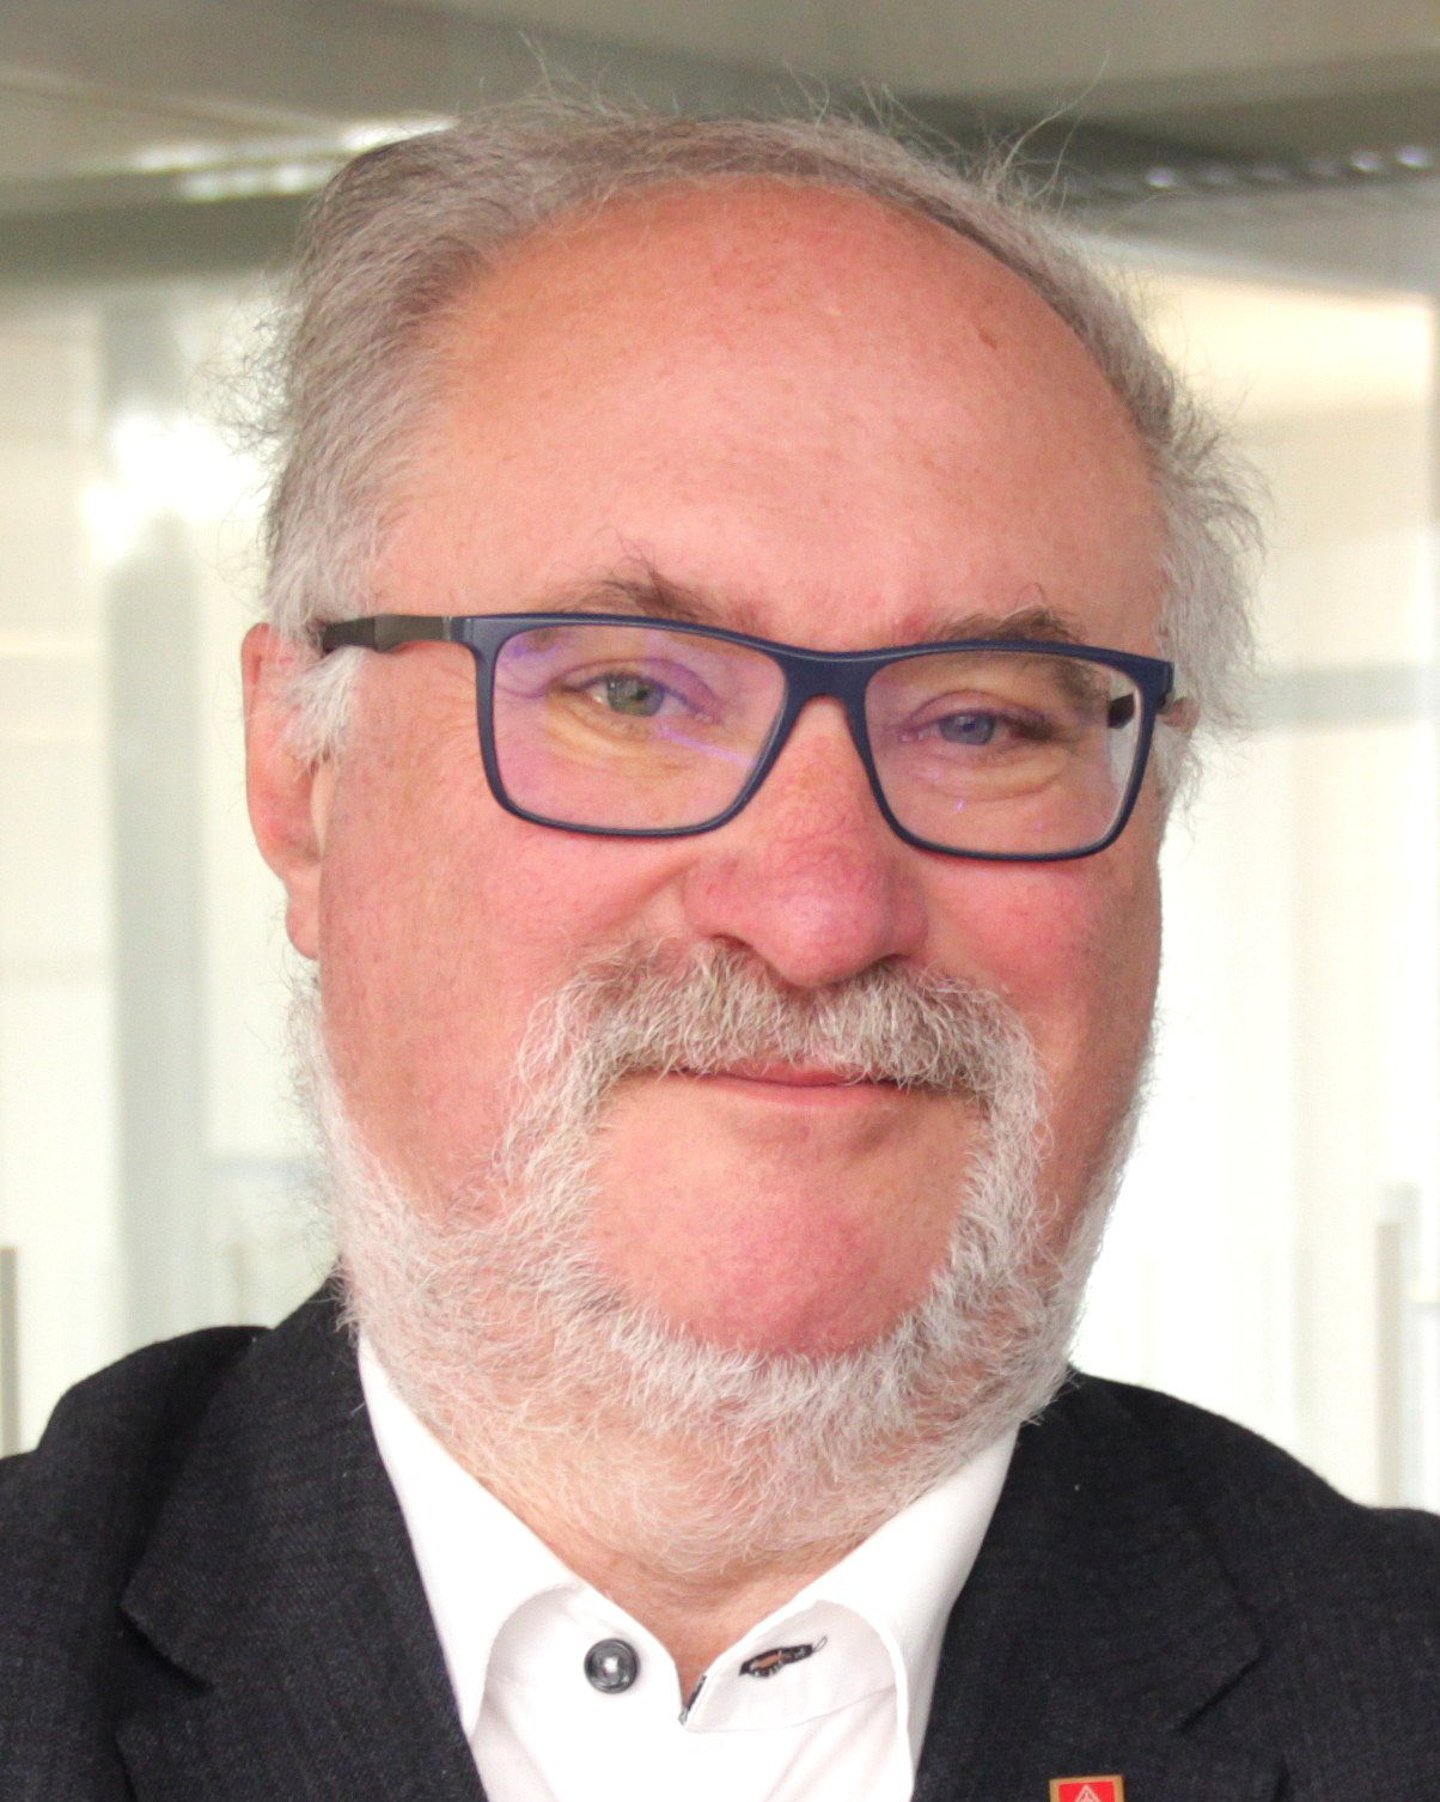 Porträt von Lutz Schäffer, alternierender AOK-Verwaltungsratsvorsitzender und Versichertenvertreter bei der AOK NordWest